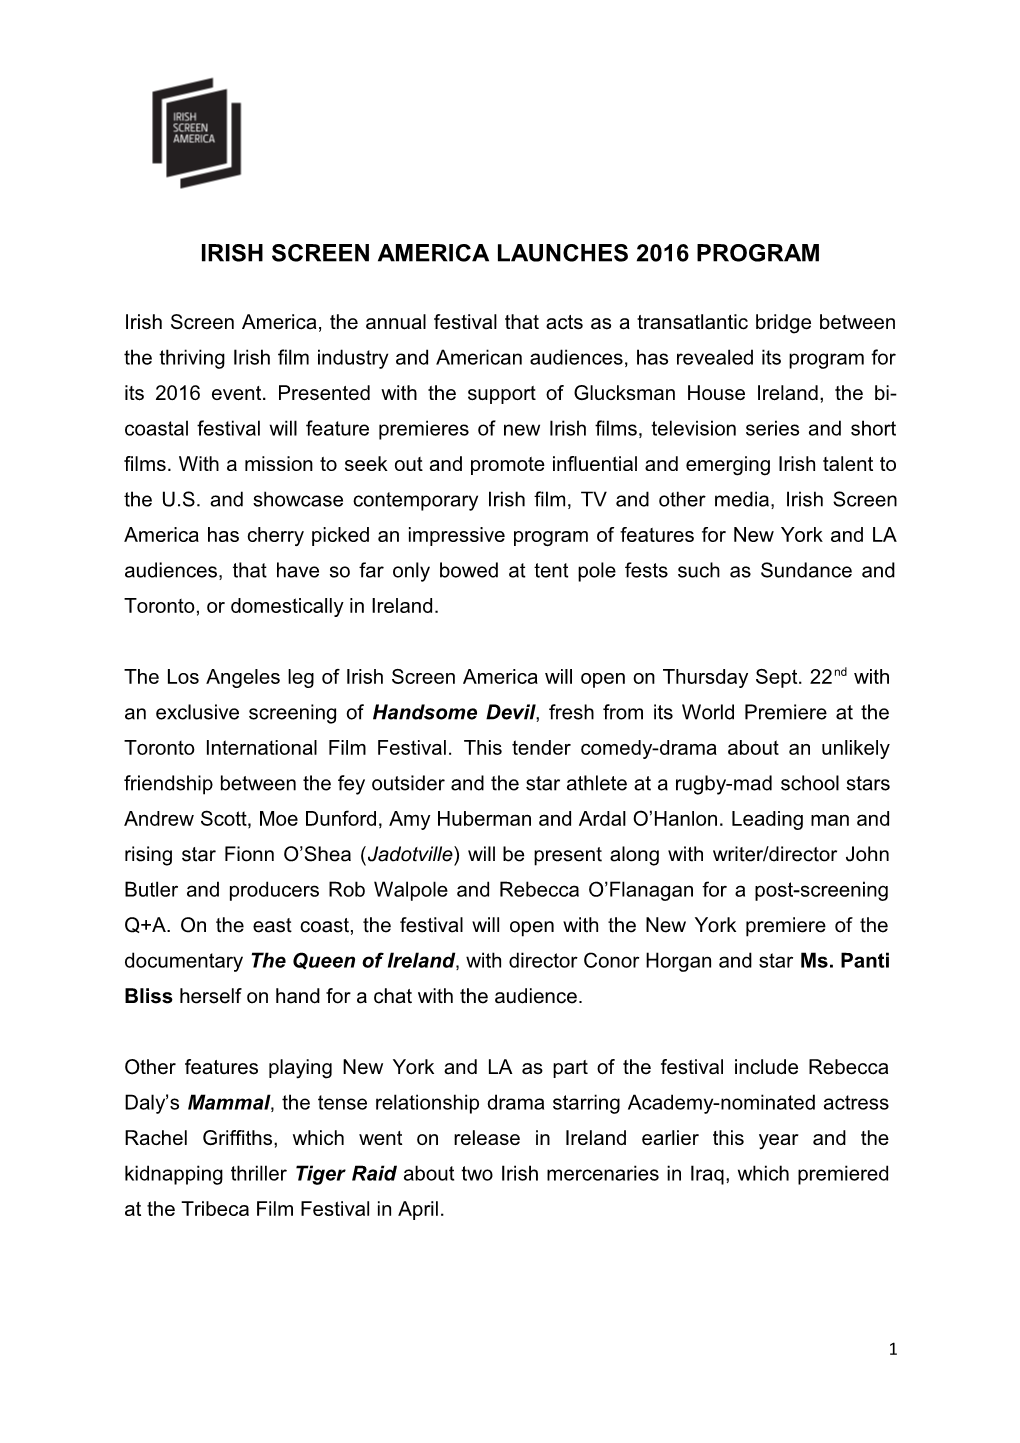 Irish Screen America Launches 2016 Program